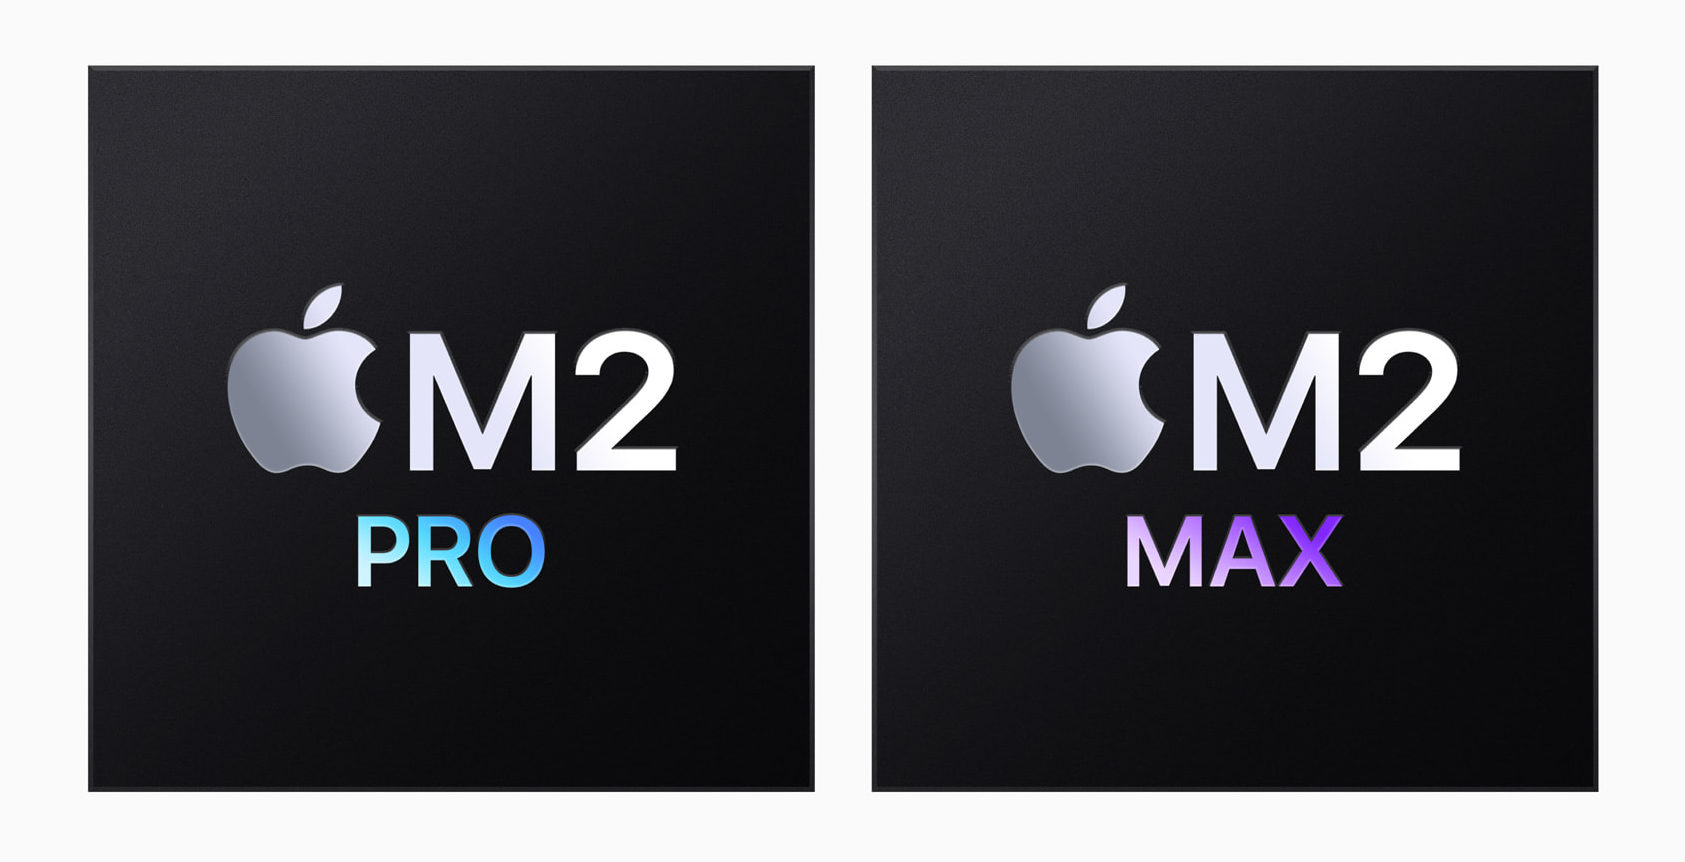 Tanto M2 Pro como M2 Max son procesadores de última generación fabricados con tecnología de 5nm que llevan el revolucionario rendimiento y consumo eficiente del chip de Apple a nuevas cotas